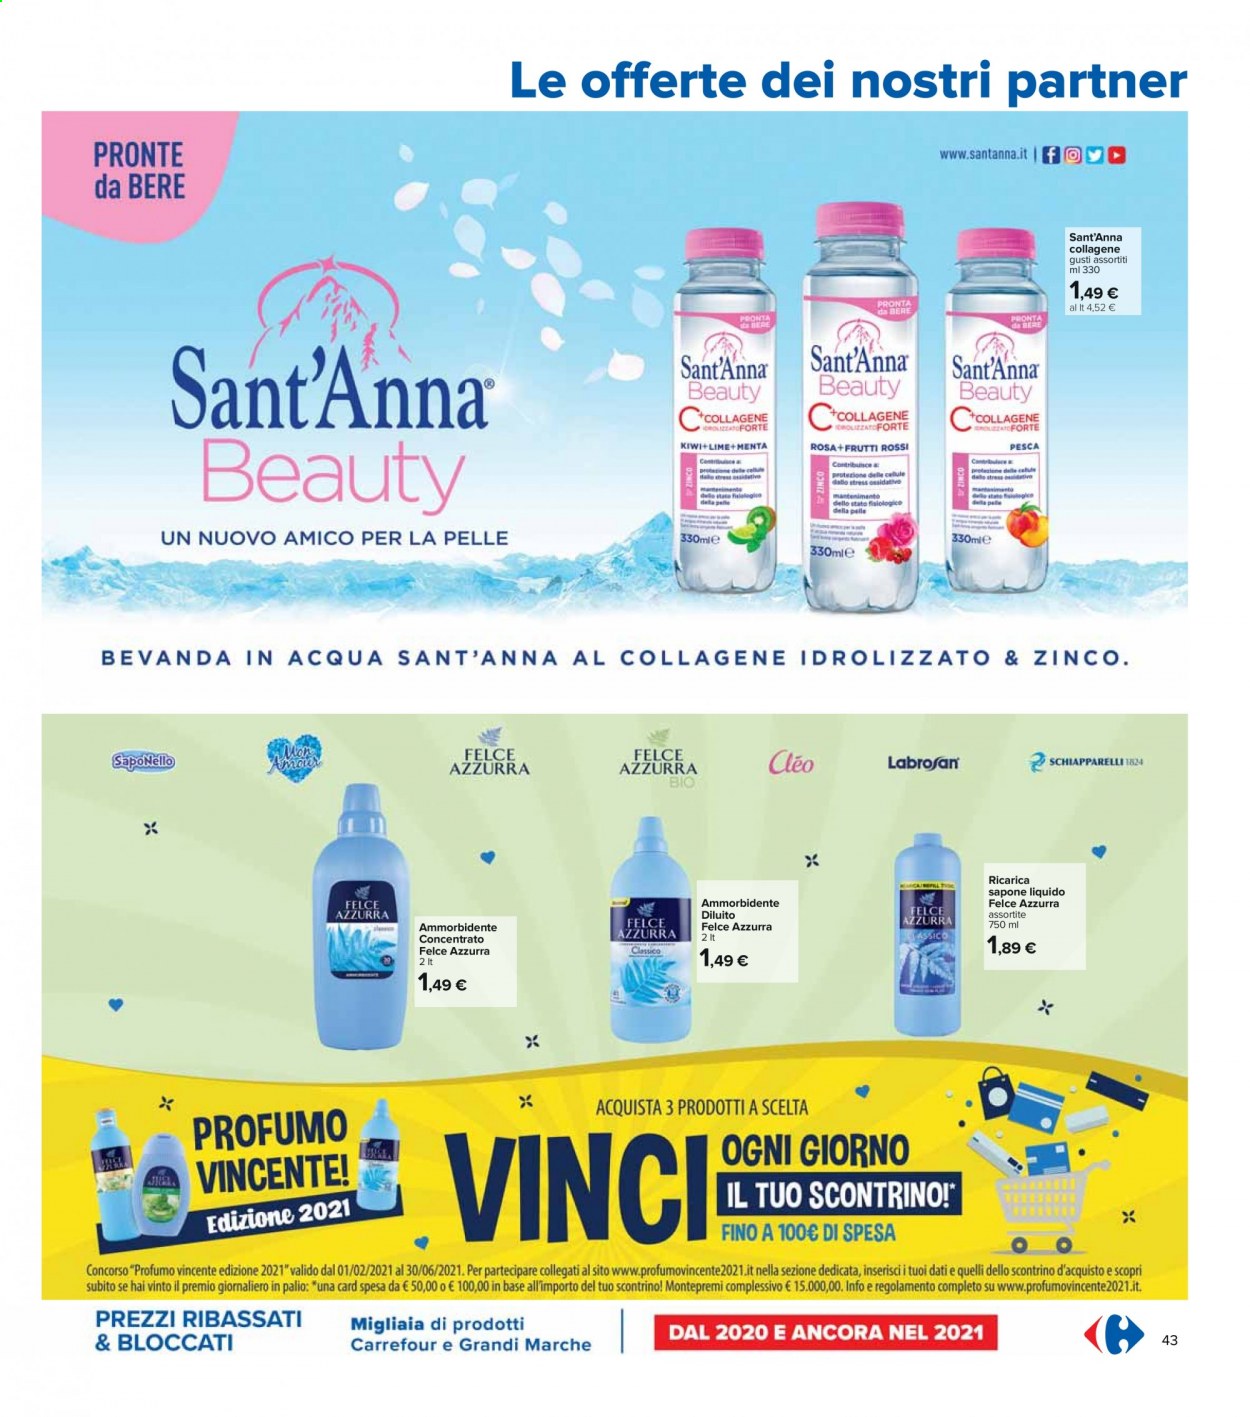 thumbnail - Volantino Carrefour - 6/5/2021 - 19/5/2021 - Prodotti in offerta - Sant'Anna, Felce Azzurra, ammorbidente, sapone, sapone liquido, profumo, Zinco. Pagina 43.